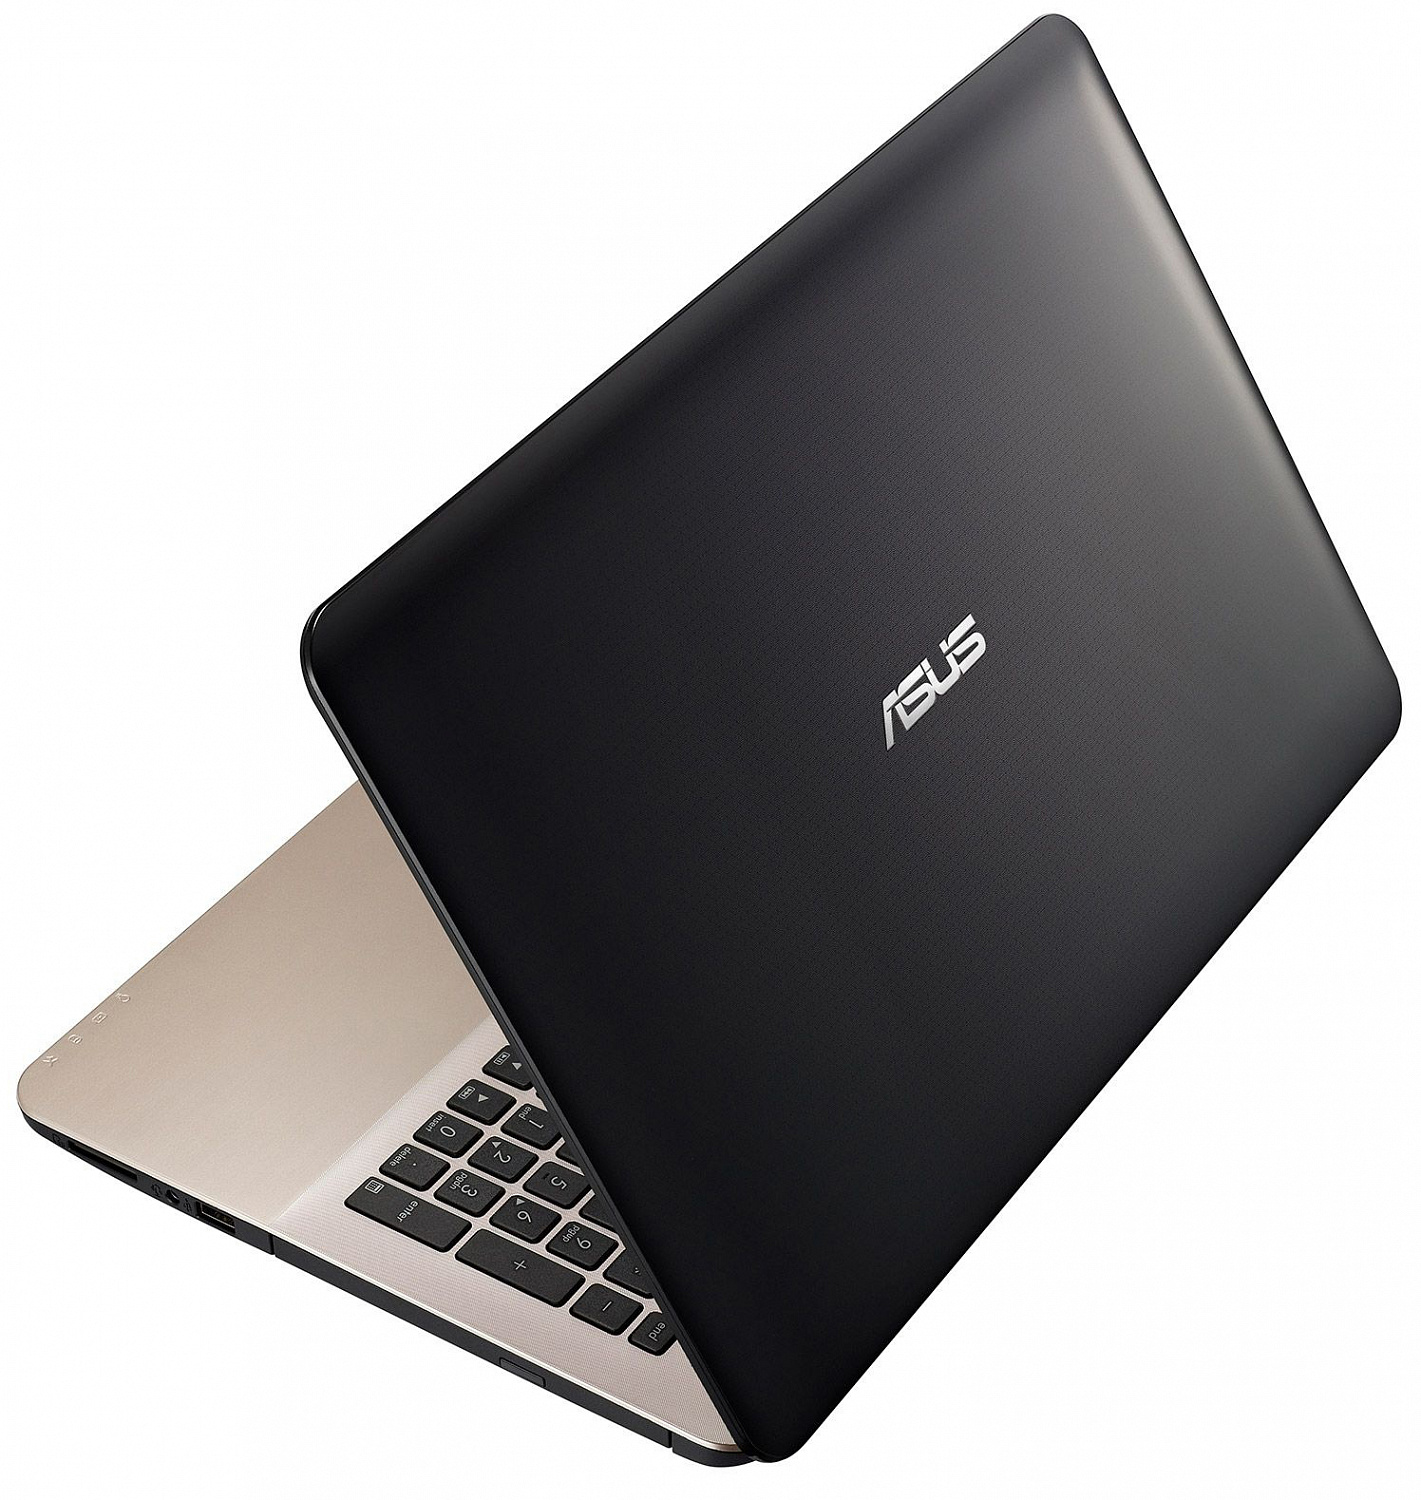 Купить Ноутбук ASUS X555LB (X555LB-DM142D) Dark Brown - ITMag